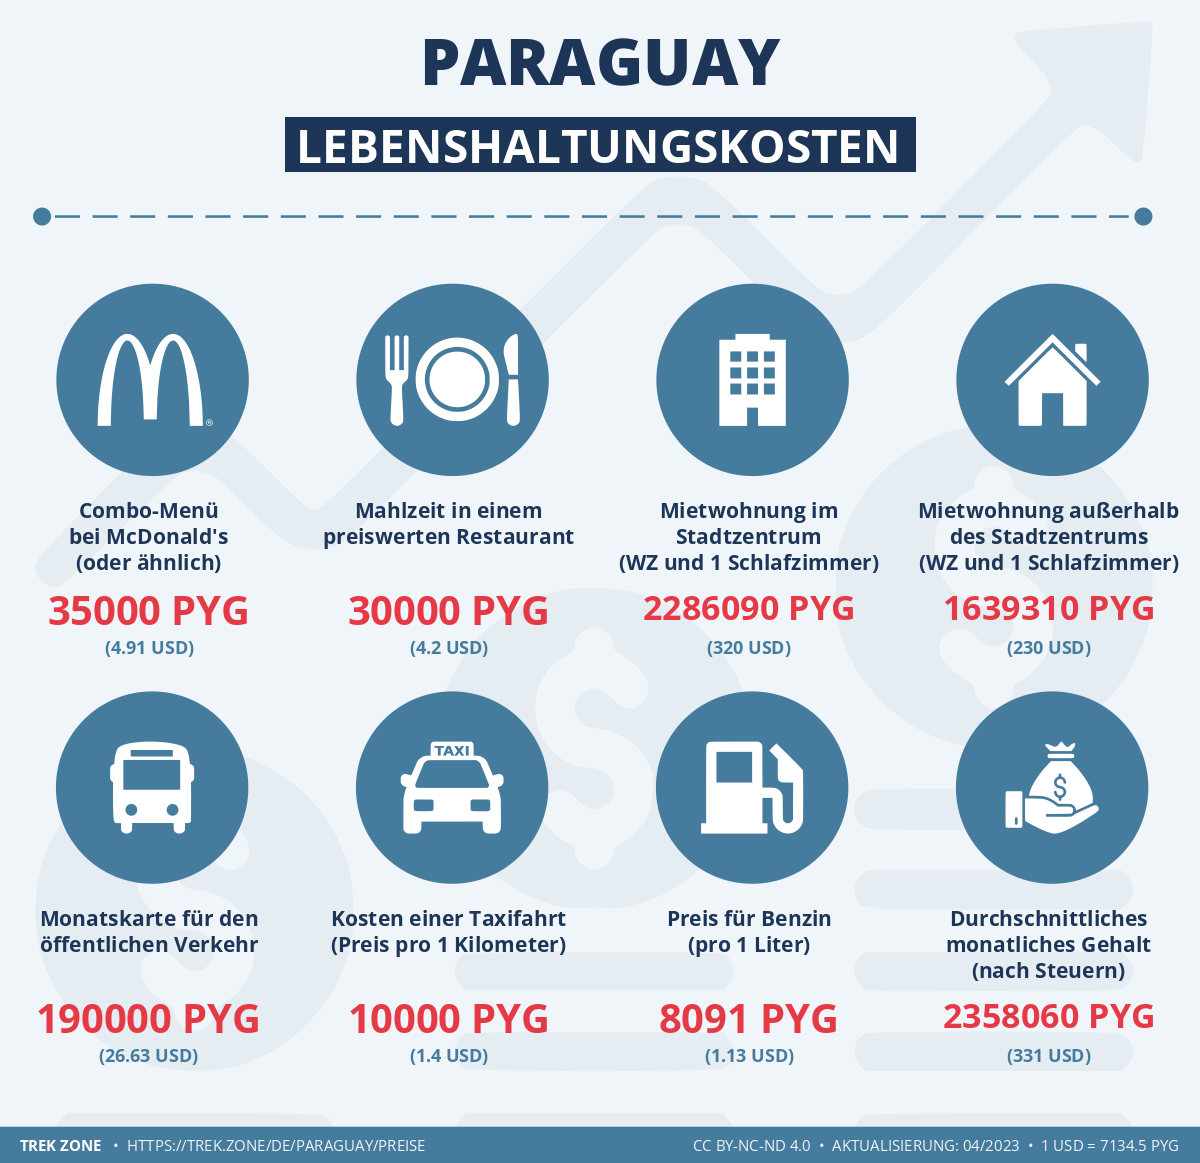 preise und lebenskosten paraguay